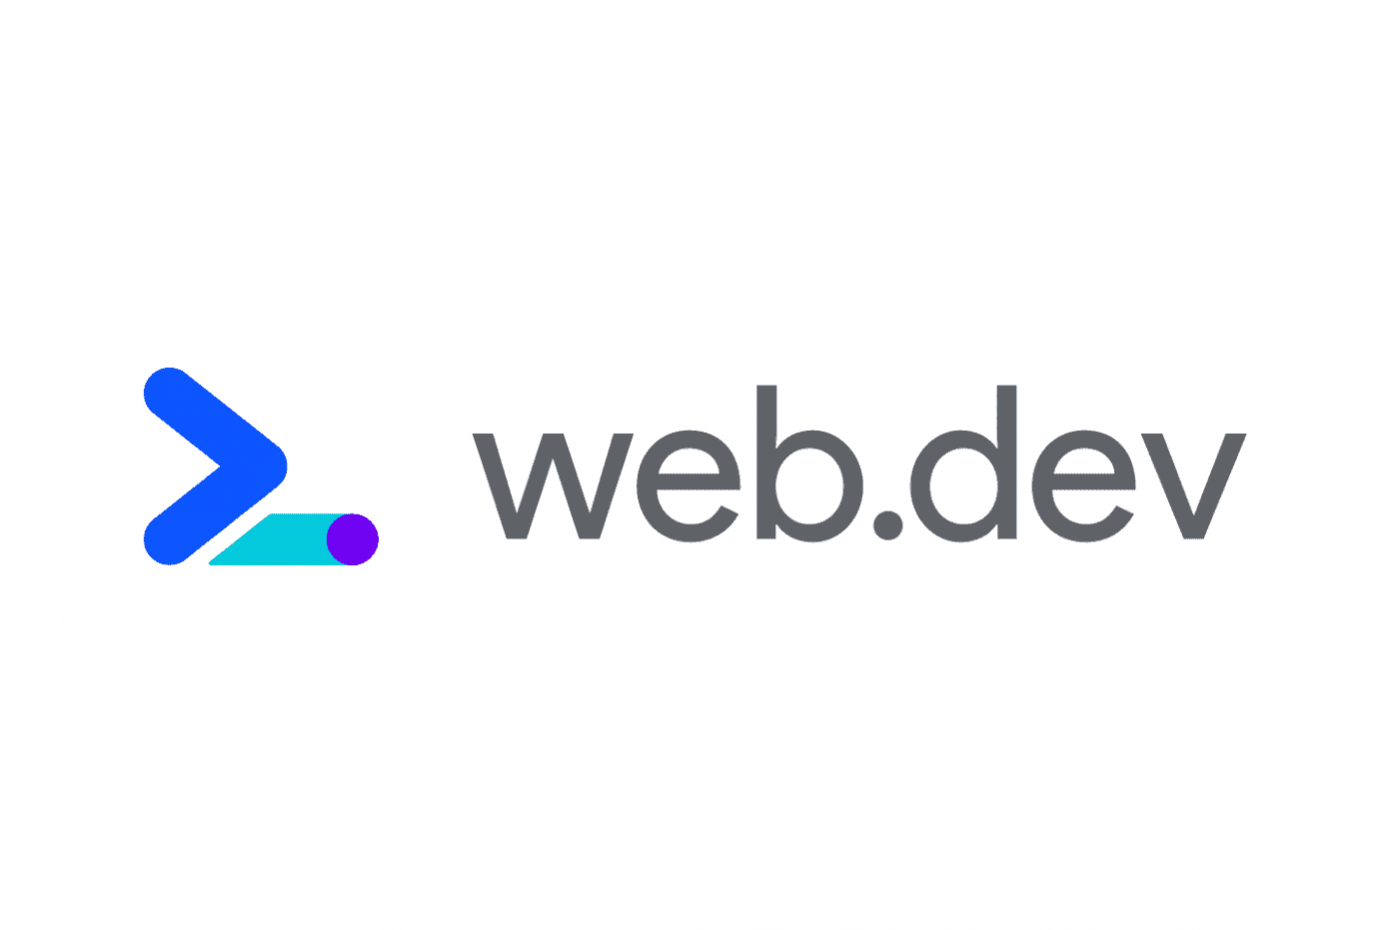 Webdev. Веб Дева. Веб дев логотип. Логотип Devs. Web Dev Google.